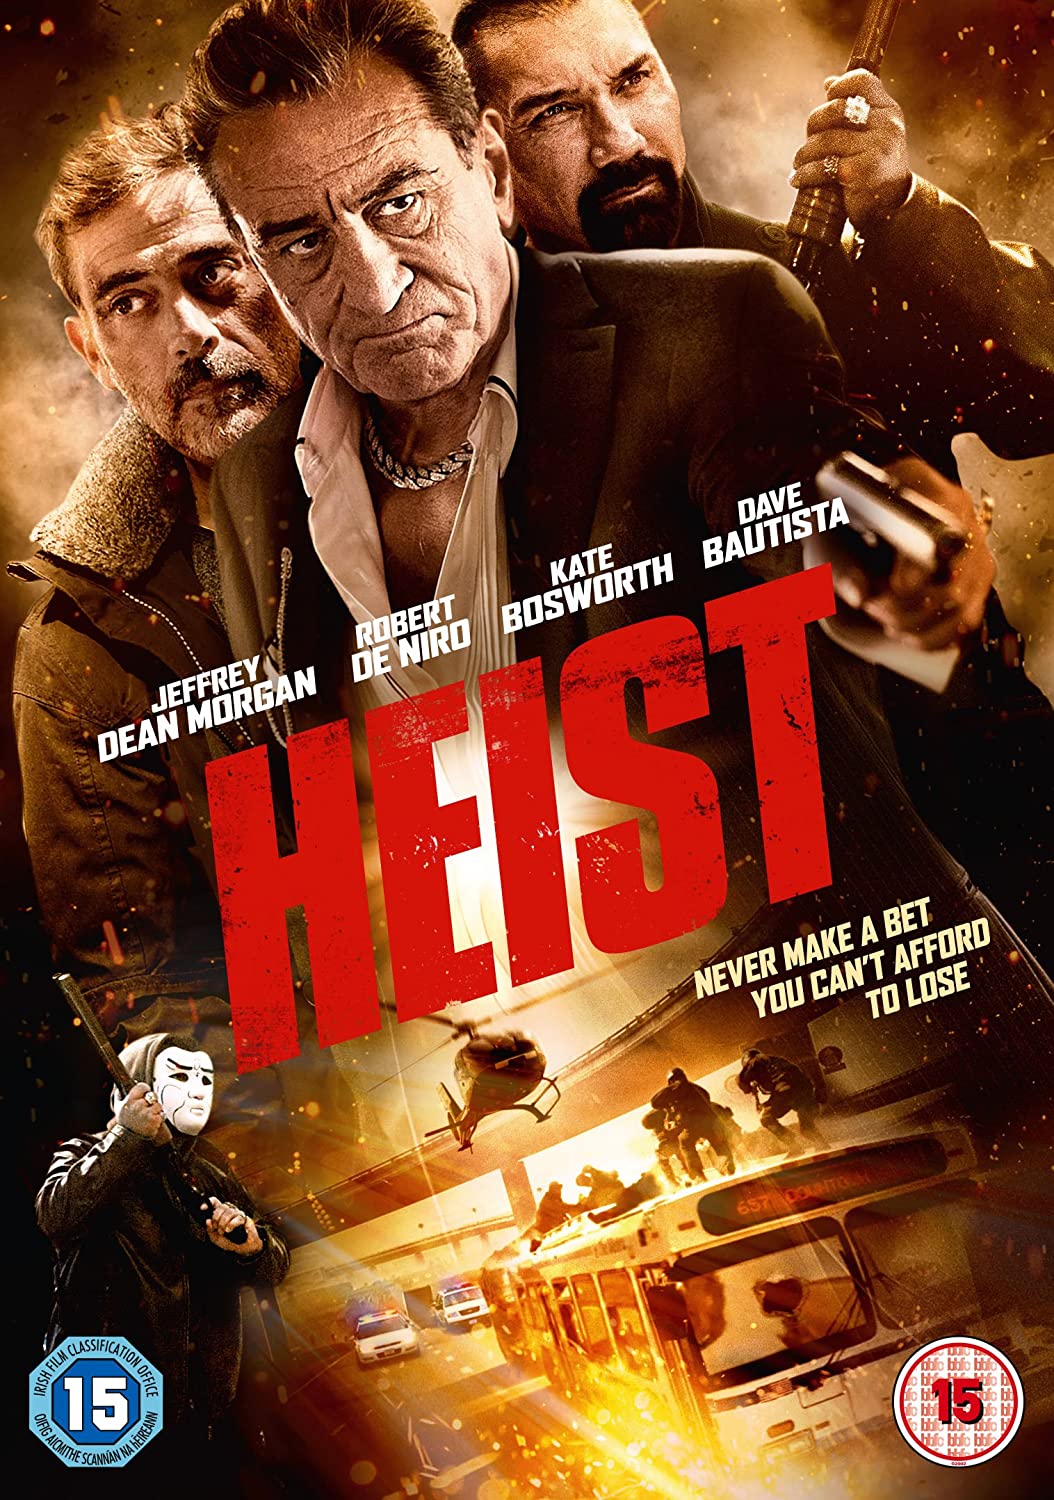 Heist [2017] Action/thriller [DVD]